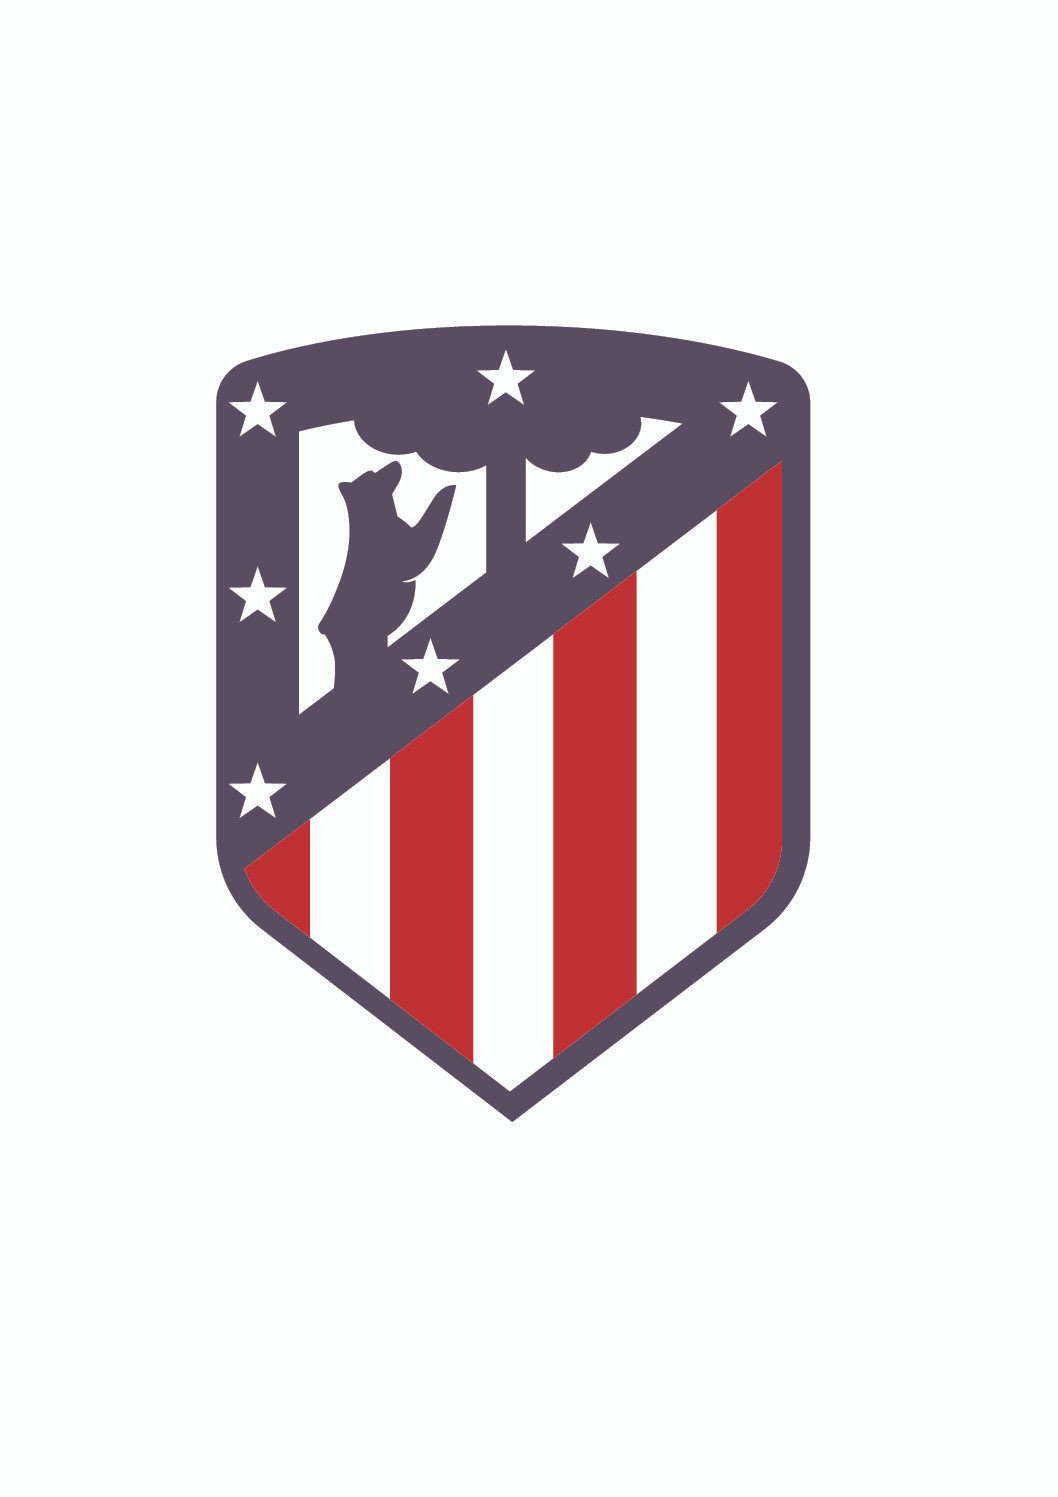 Fardamento personalizado para equipe do Atlético, da cidade de Campos Borges.